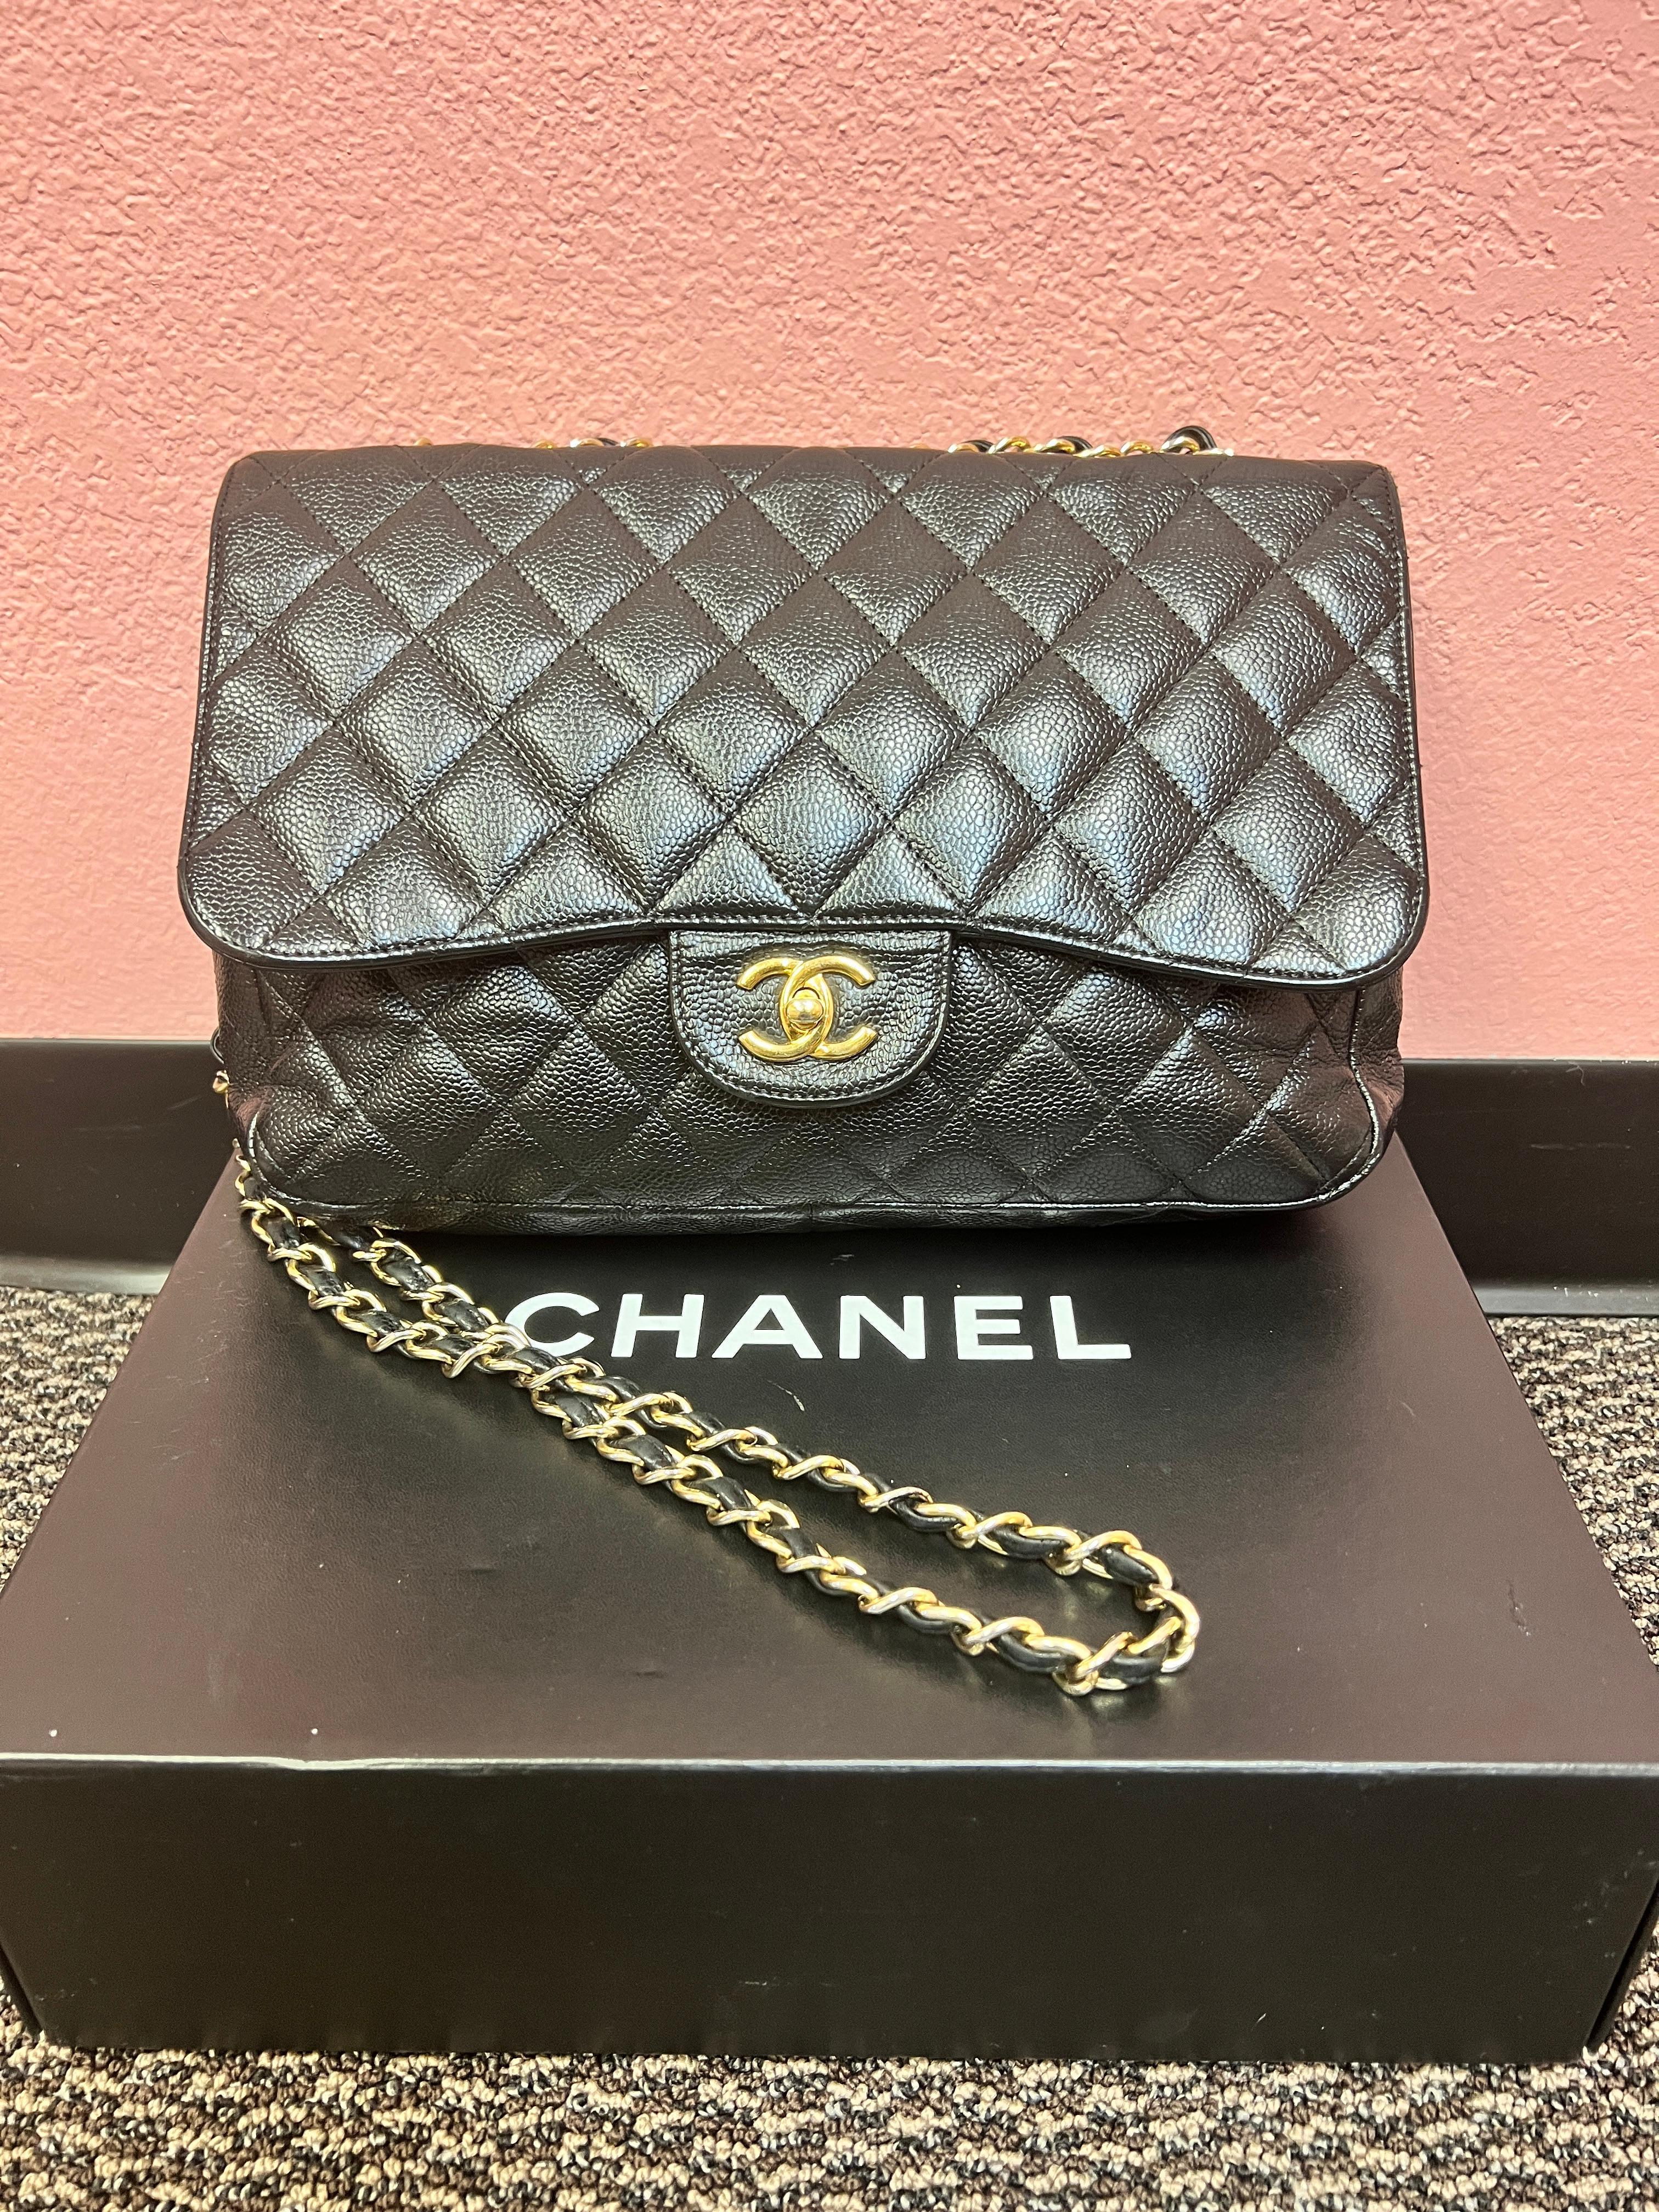 Die Qualität von Chanel im Vintage-Stil zu einem unschlagbaren Preis. 

Das klassische Chanel  Eine Klappe, die jeder will und braucht. 

Kaviar, schwarzes Leder mit goldenen Verzierungen. Innentaschen sowie eine Gesäßtasche. Can mit einem doppelten